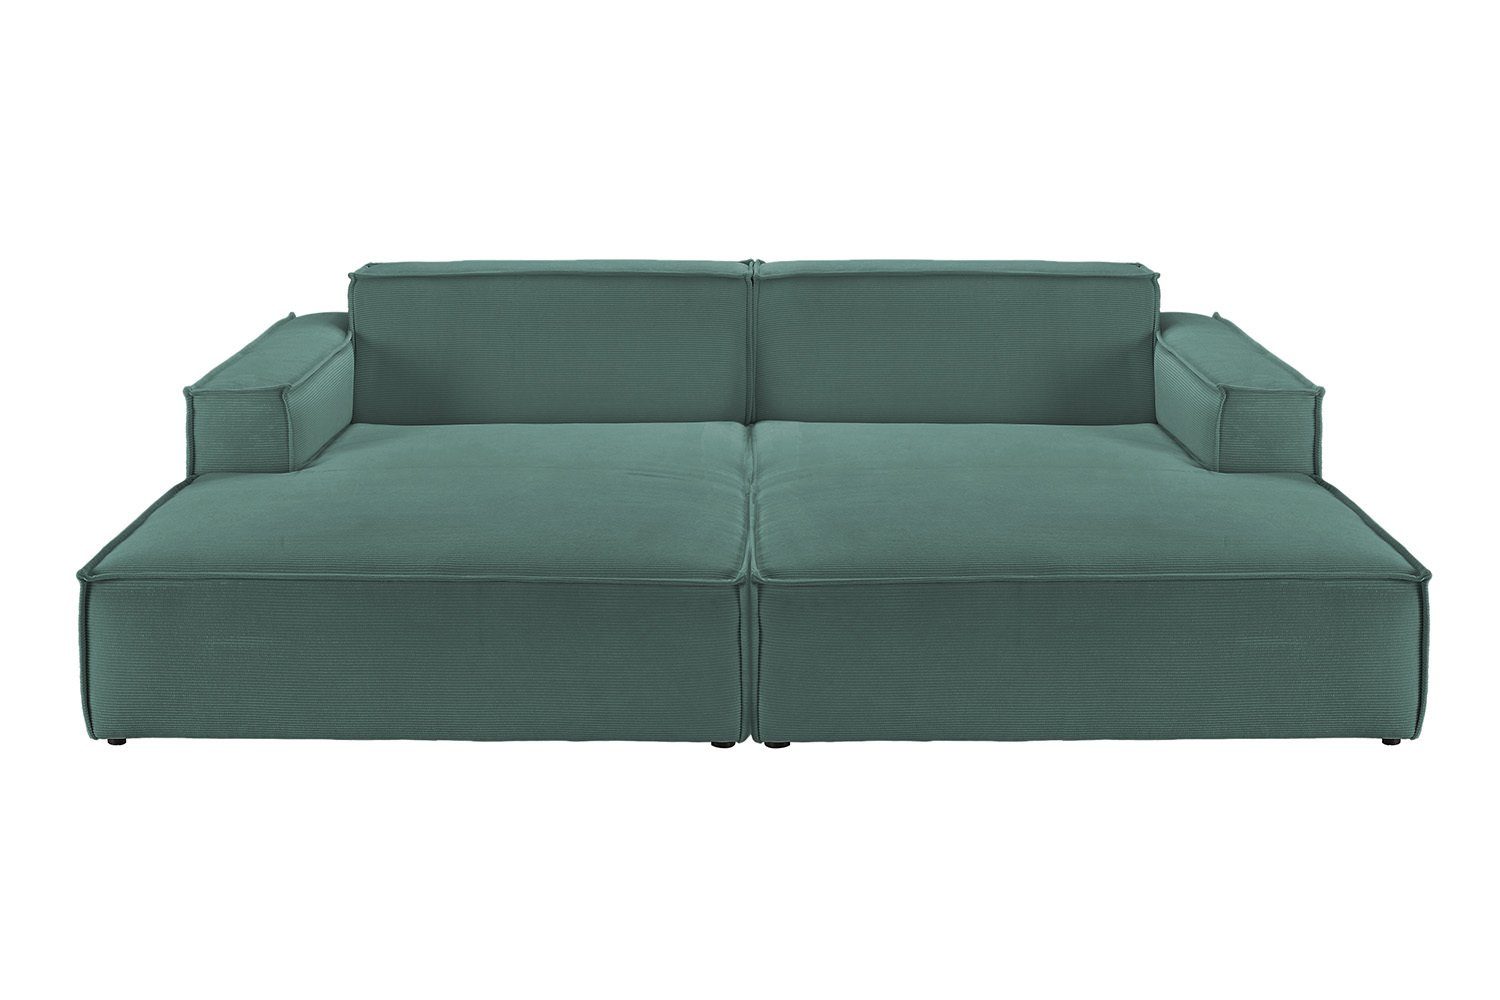 KAWOLA Big-Sofa SAMU, Sofa Feincord verschiedene Farben grün